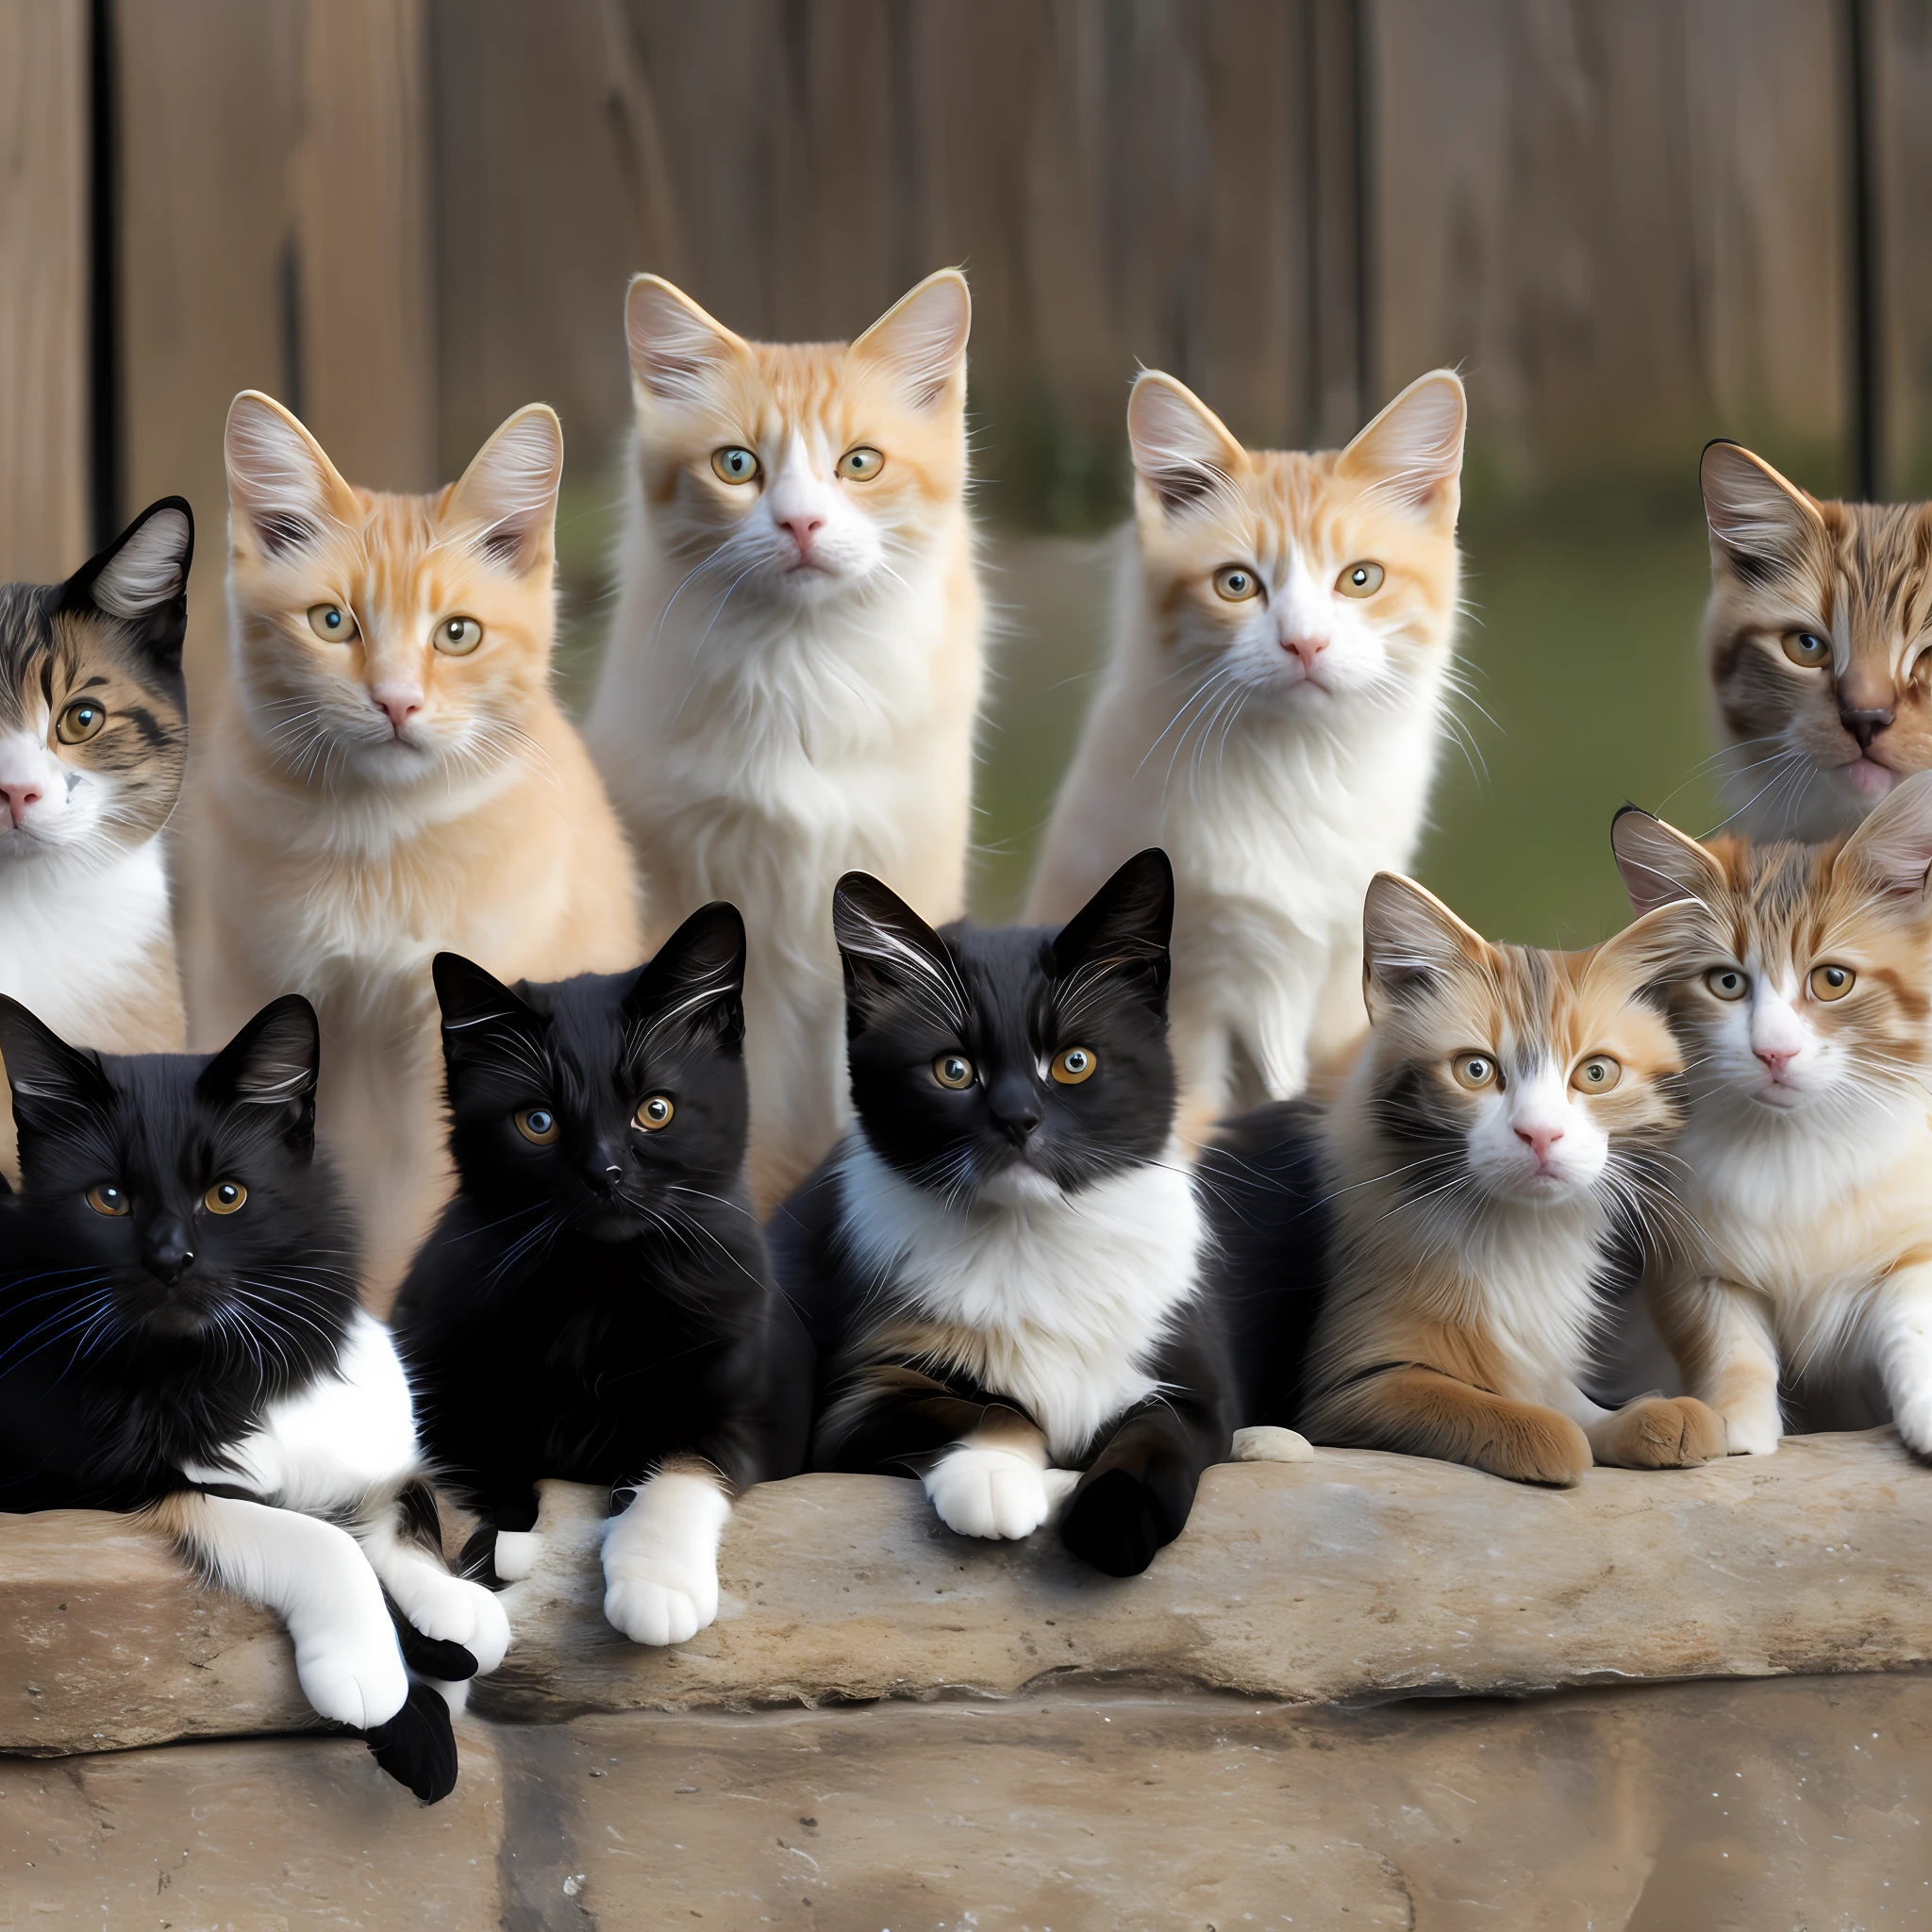 รูปถ่ายของแมวจรจัด 8 ตัว, หนึ่งสีดํา, 3 ขาวดำ, 1 สยามมีส, มีลมกระโชกสีขาวและสีเทาครั้งหนึ่ง, เผือกหนึ่งตัว, ลมกระโชกหนึ่ง